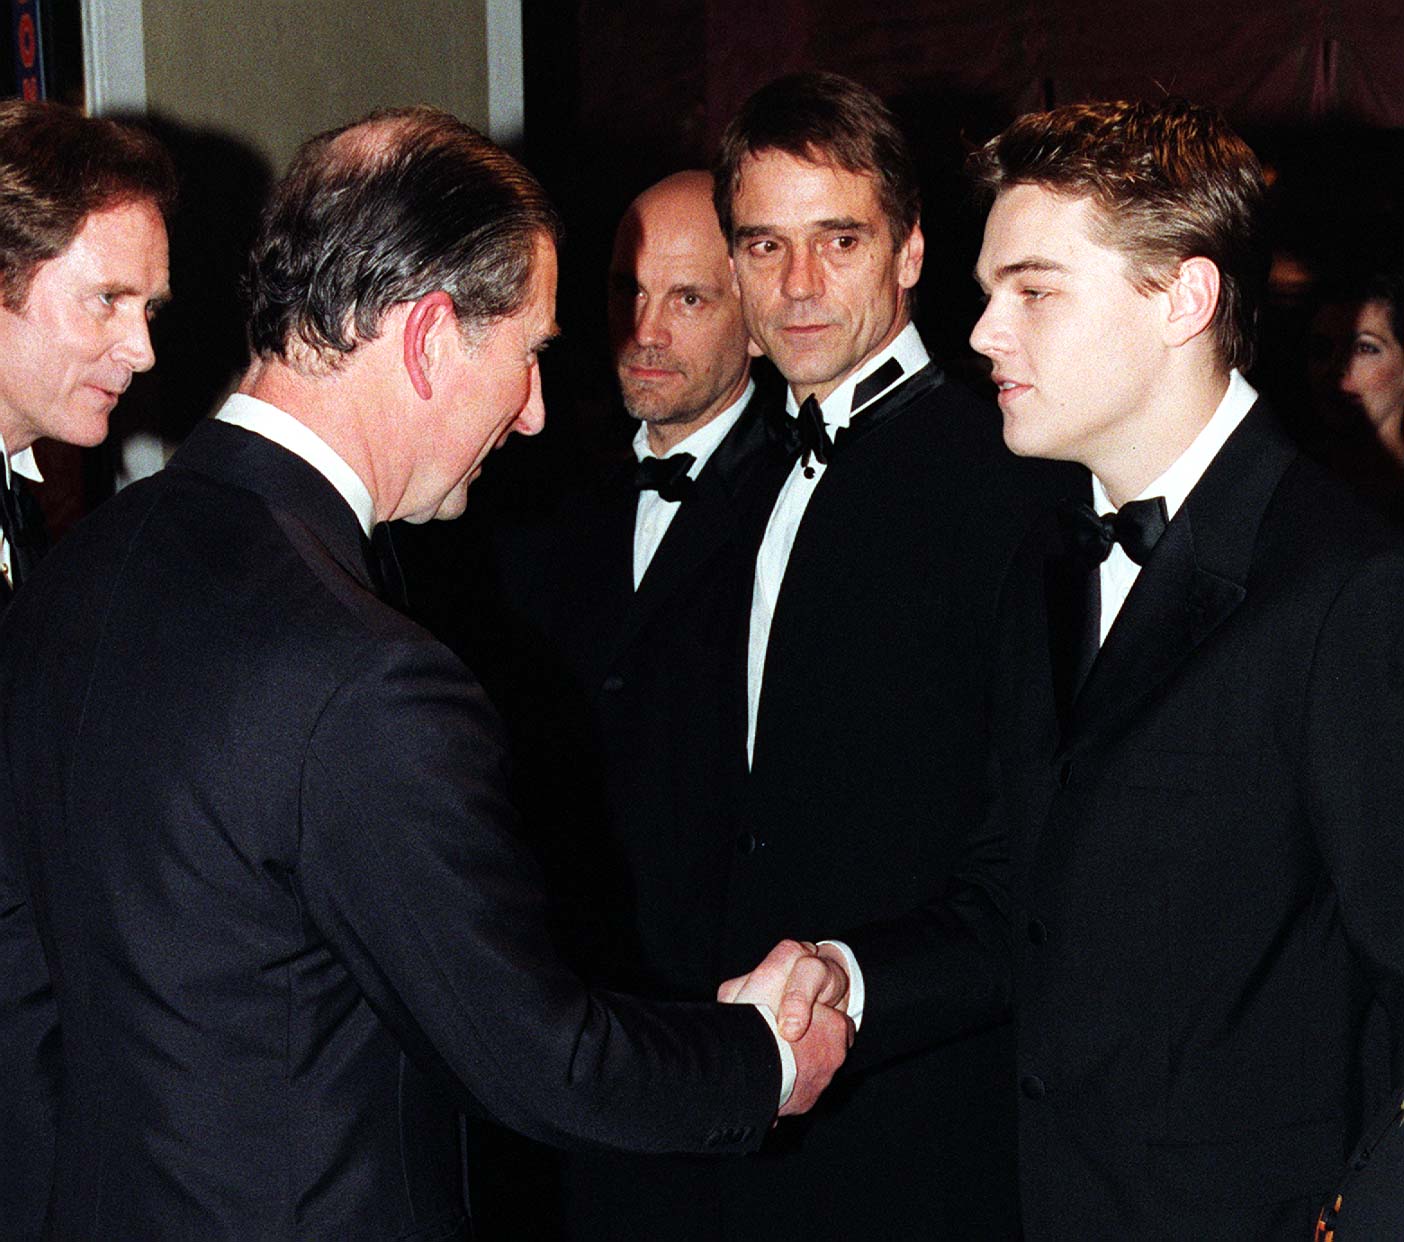 Charles, príncipe de Gales (ahora rey Charles III) estrecha la mano de Leonardo DiCaprio en el estreno real de "The Man in the Iron Mask" el 19 de marzo de 1998 | Foto: Getty Images